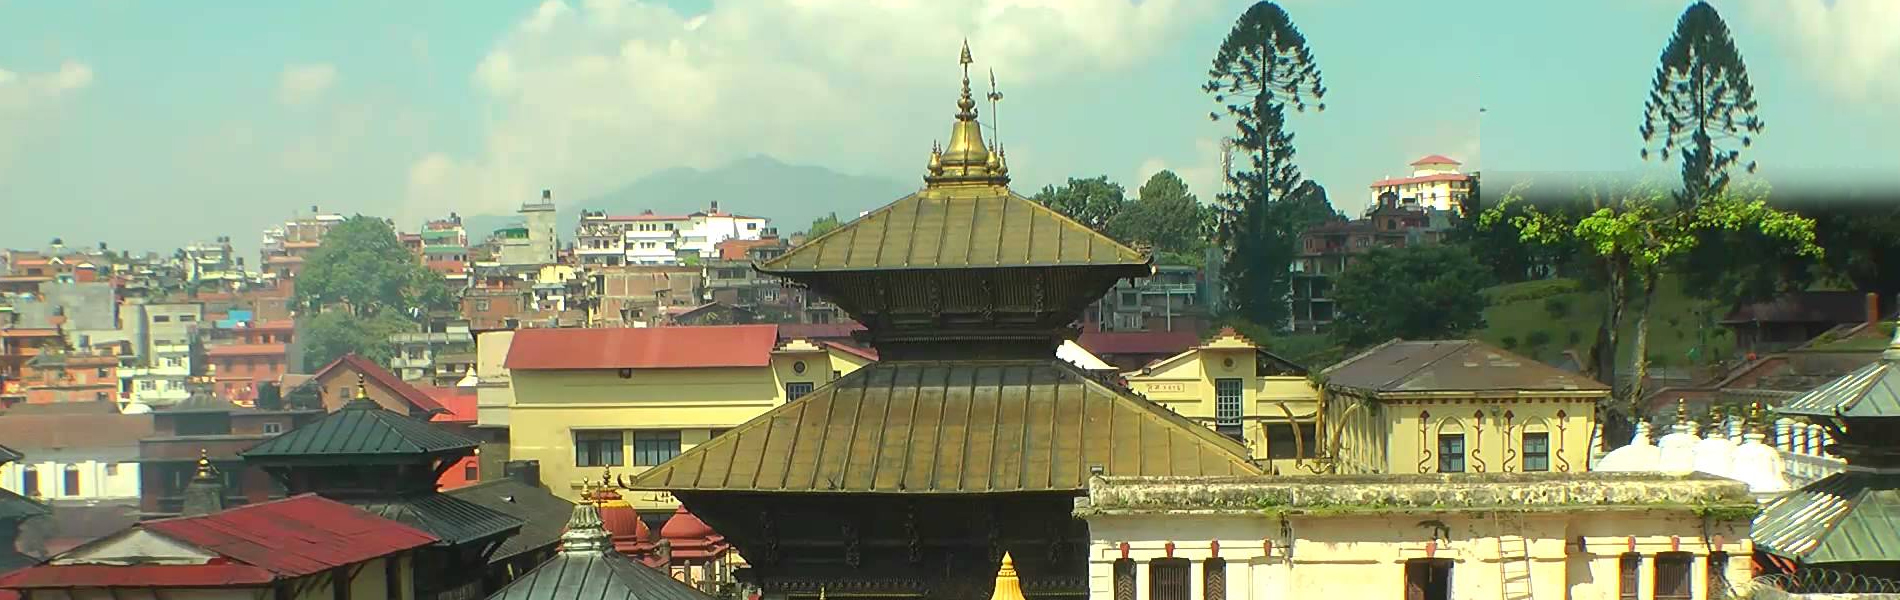 Kathmandu Transit Tour - 3 Days